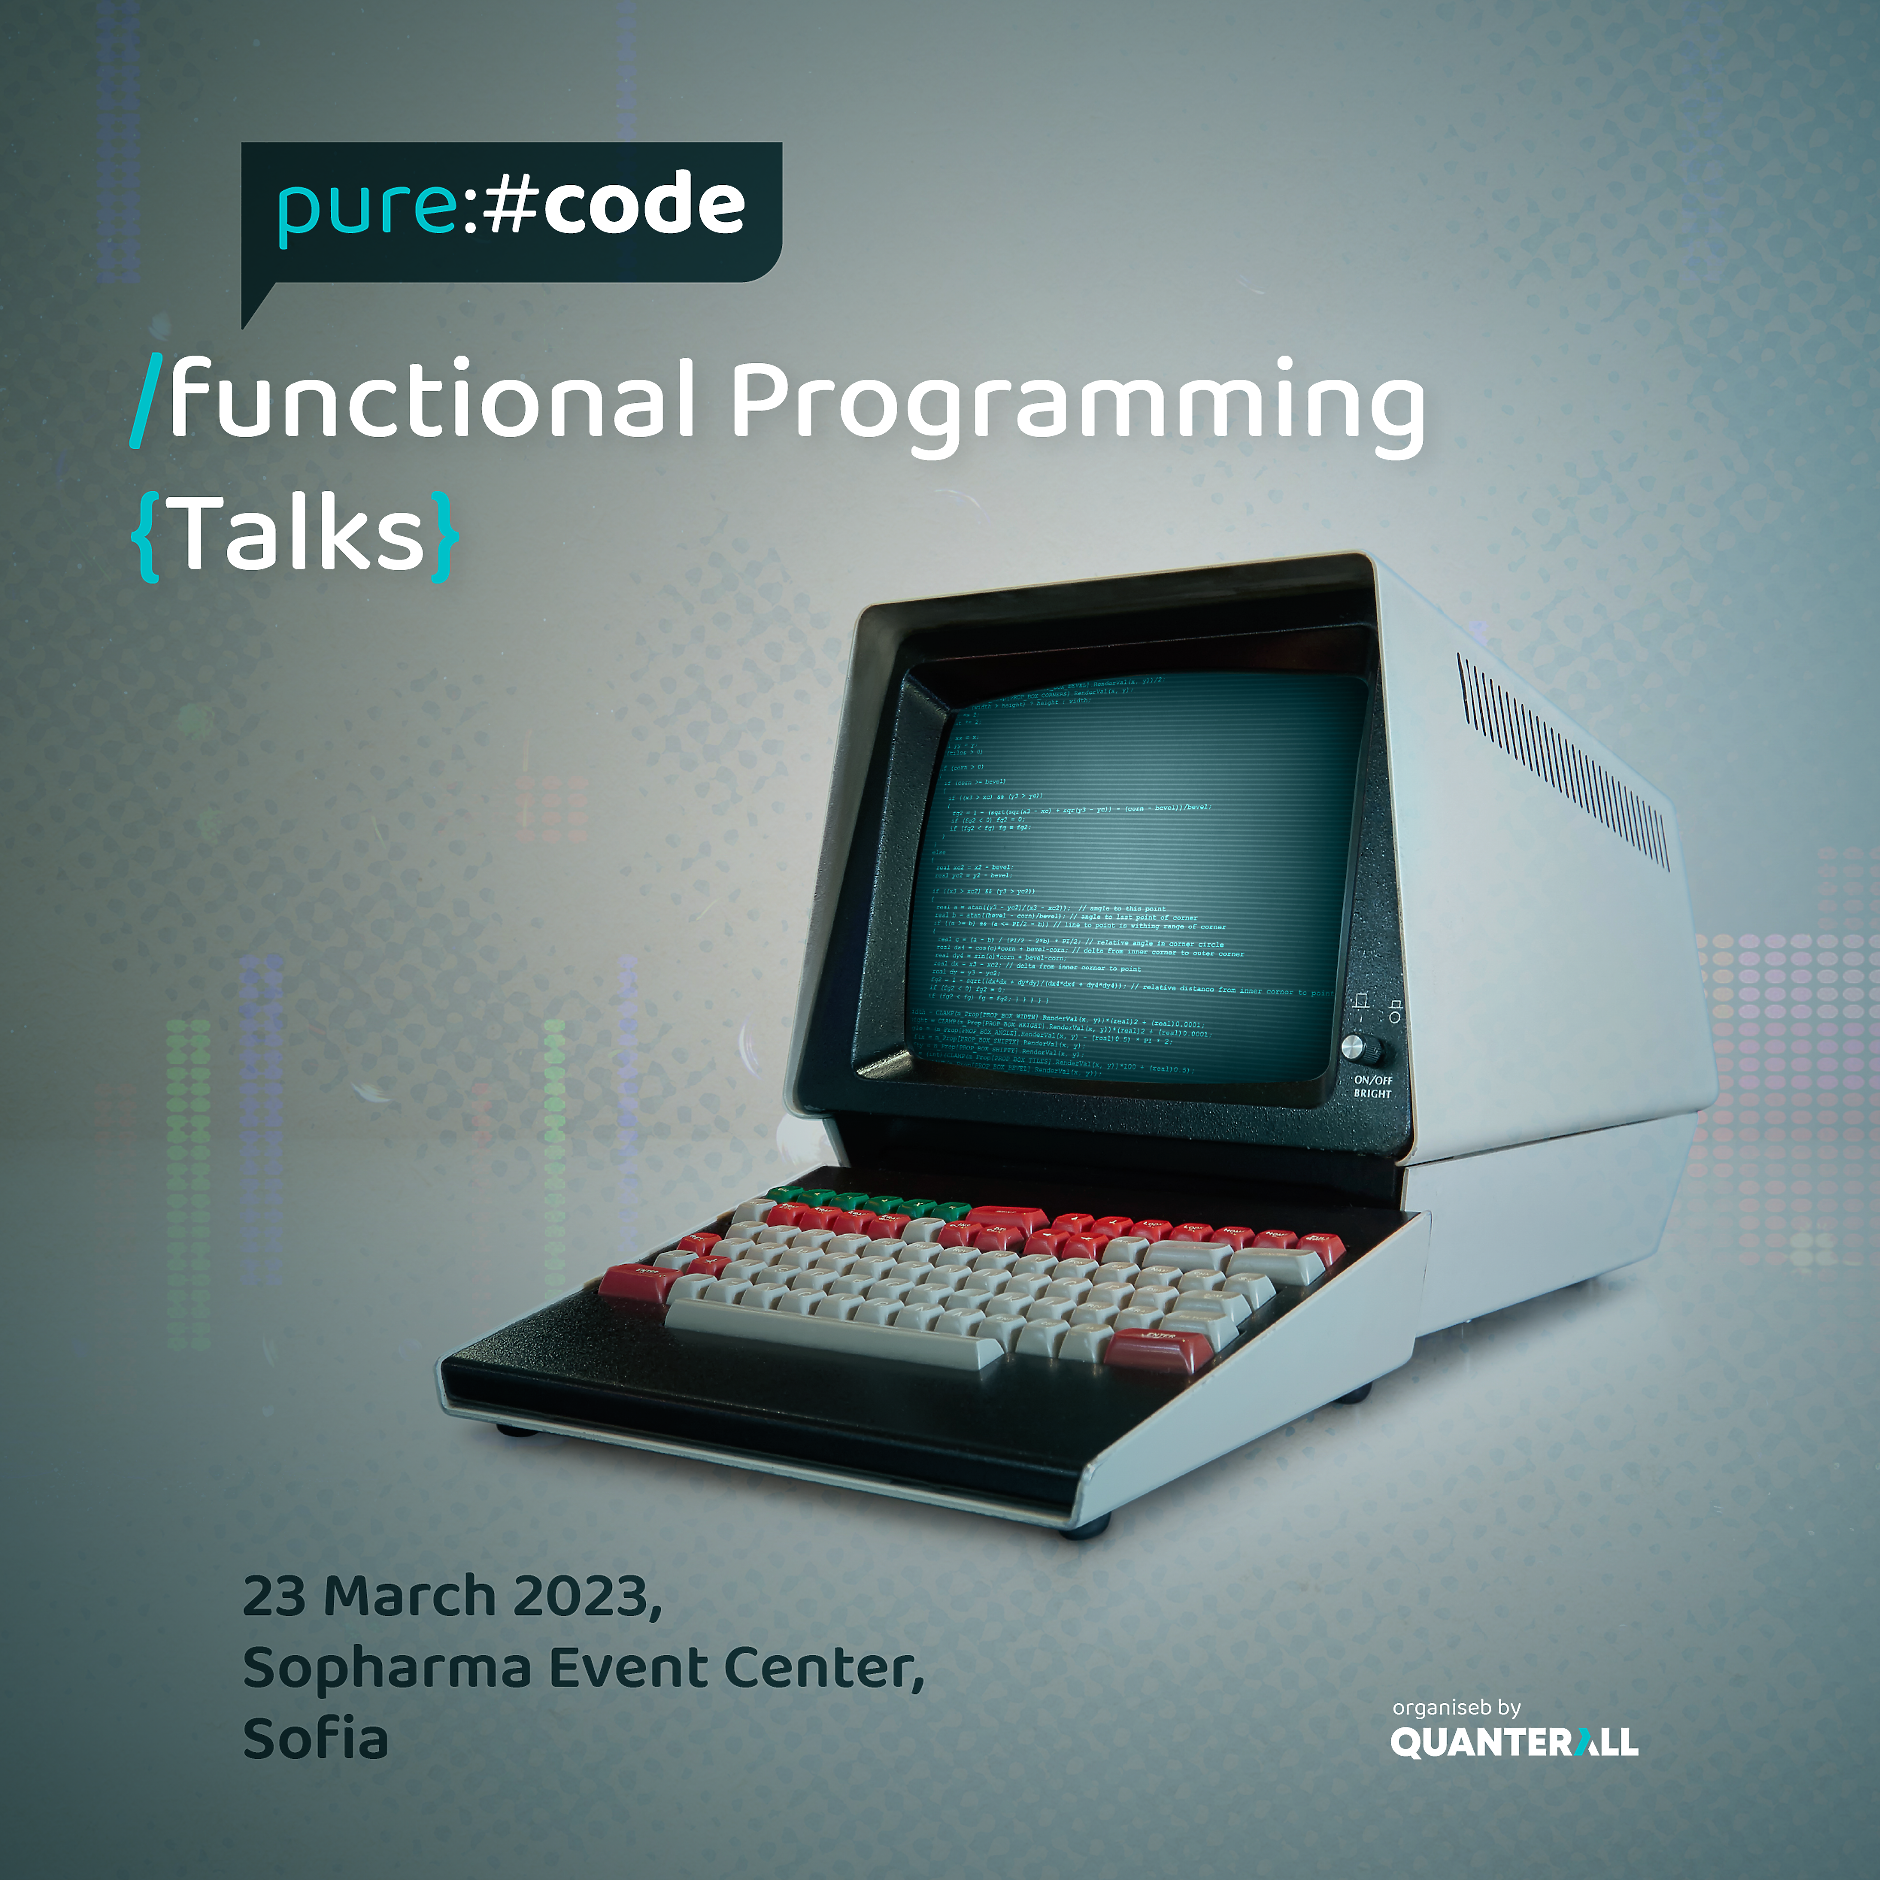 Purecode - едно събитие за функционално програмиране